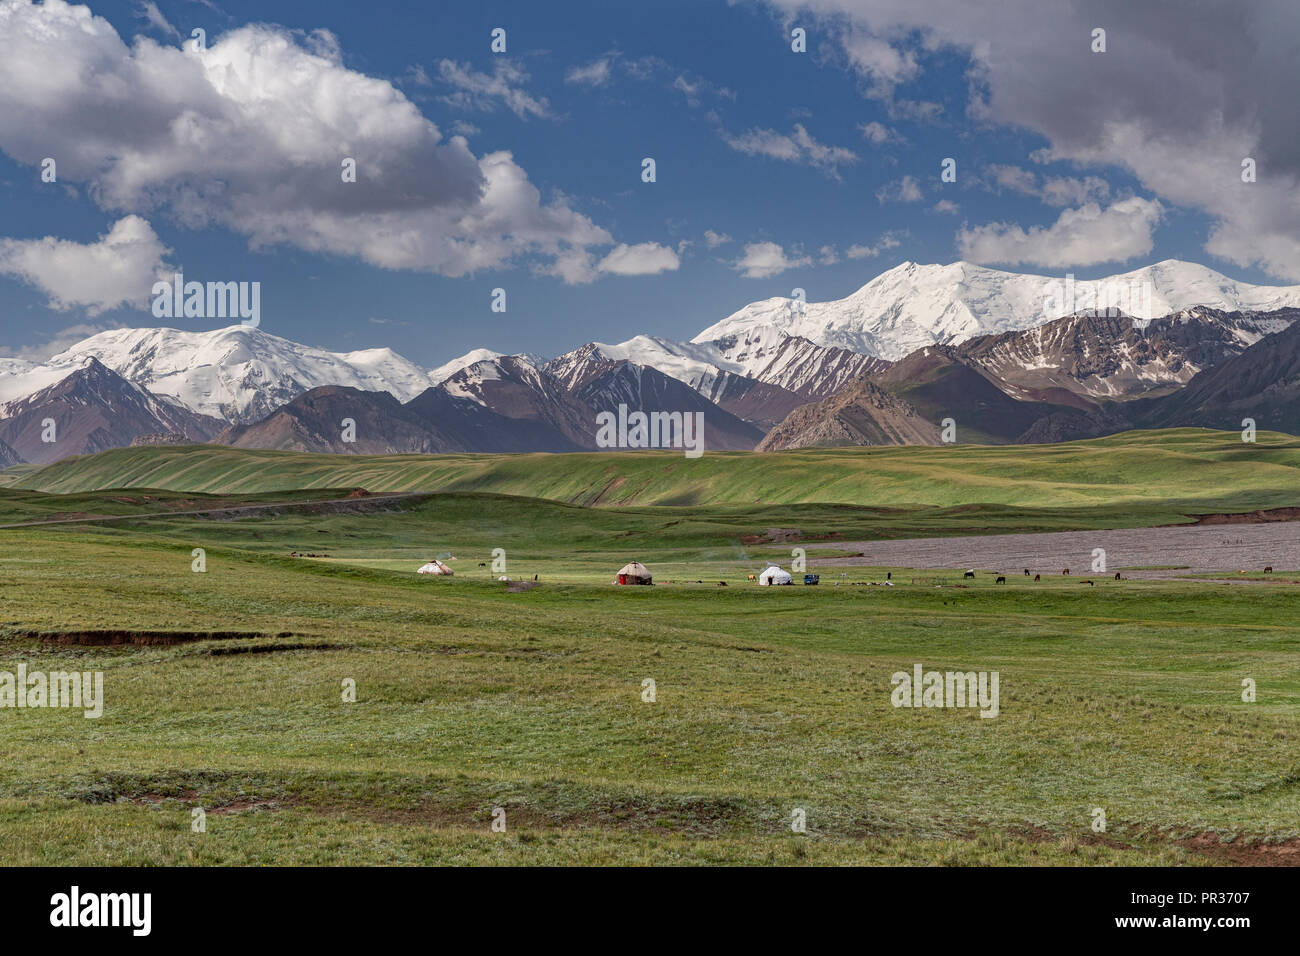 Wunderschön im Alay Tal zwischen den Bergen und dem Zaalay Pamir, dem Pamir Highway hinab in Kirgisistan. Stockfoto